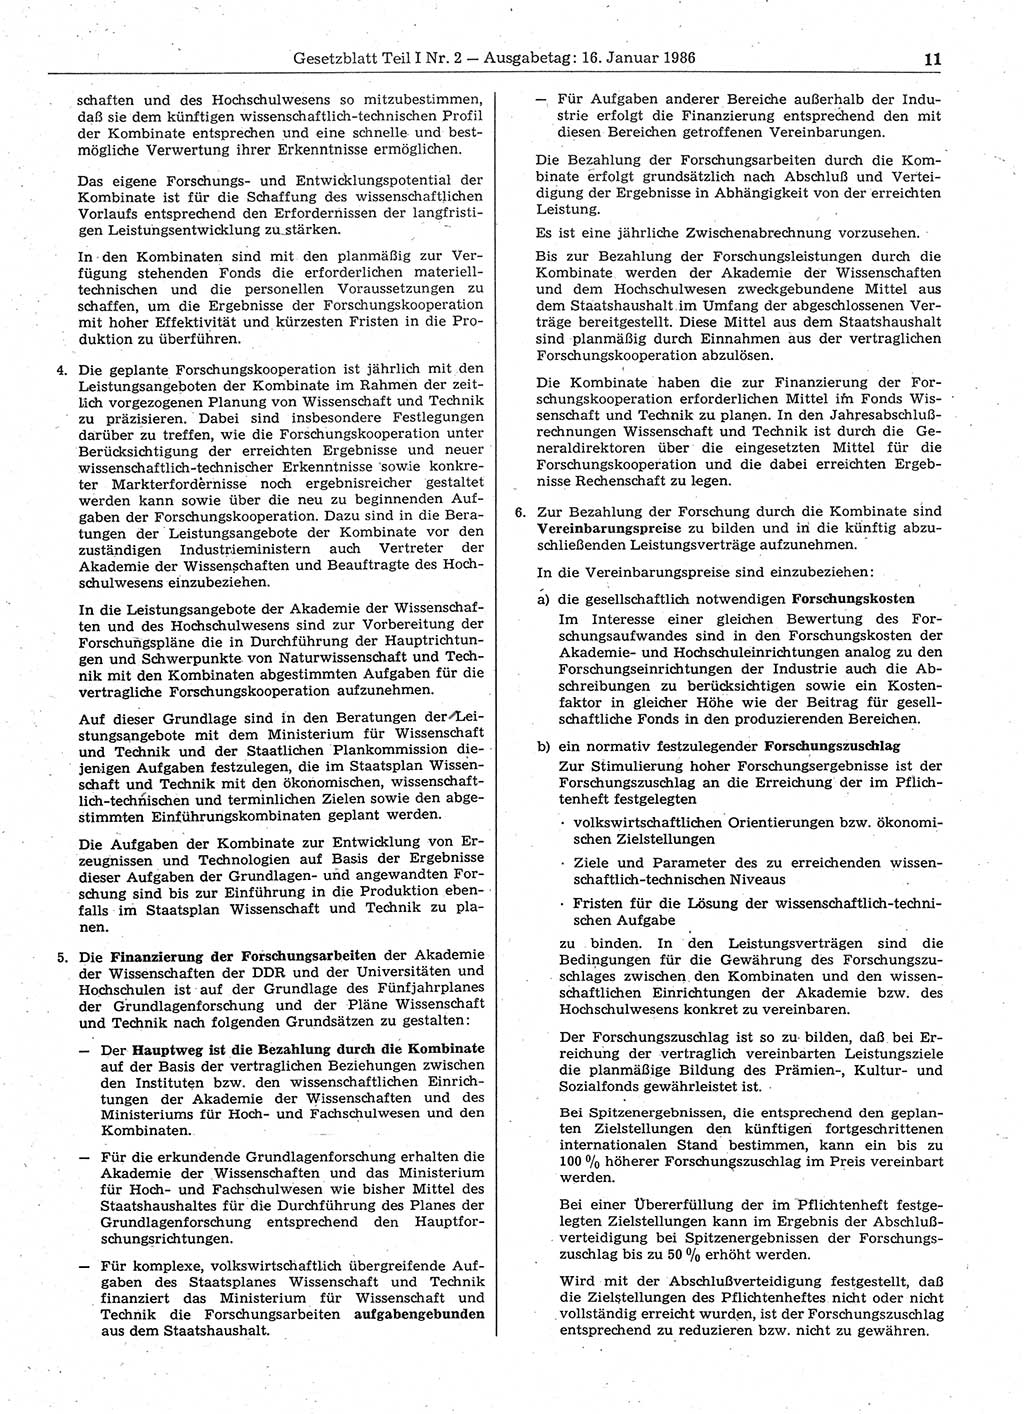 Gesetzblatt (GBl.) der Deutschen Demokratischen Republik (DDR) Teil Ⅰ 1986, Seite 11 (GBl. DDR Ⅰ 1986, S. 11)